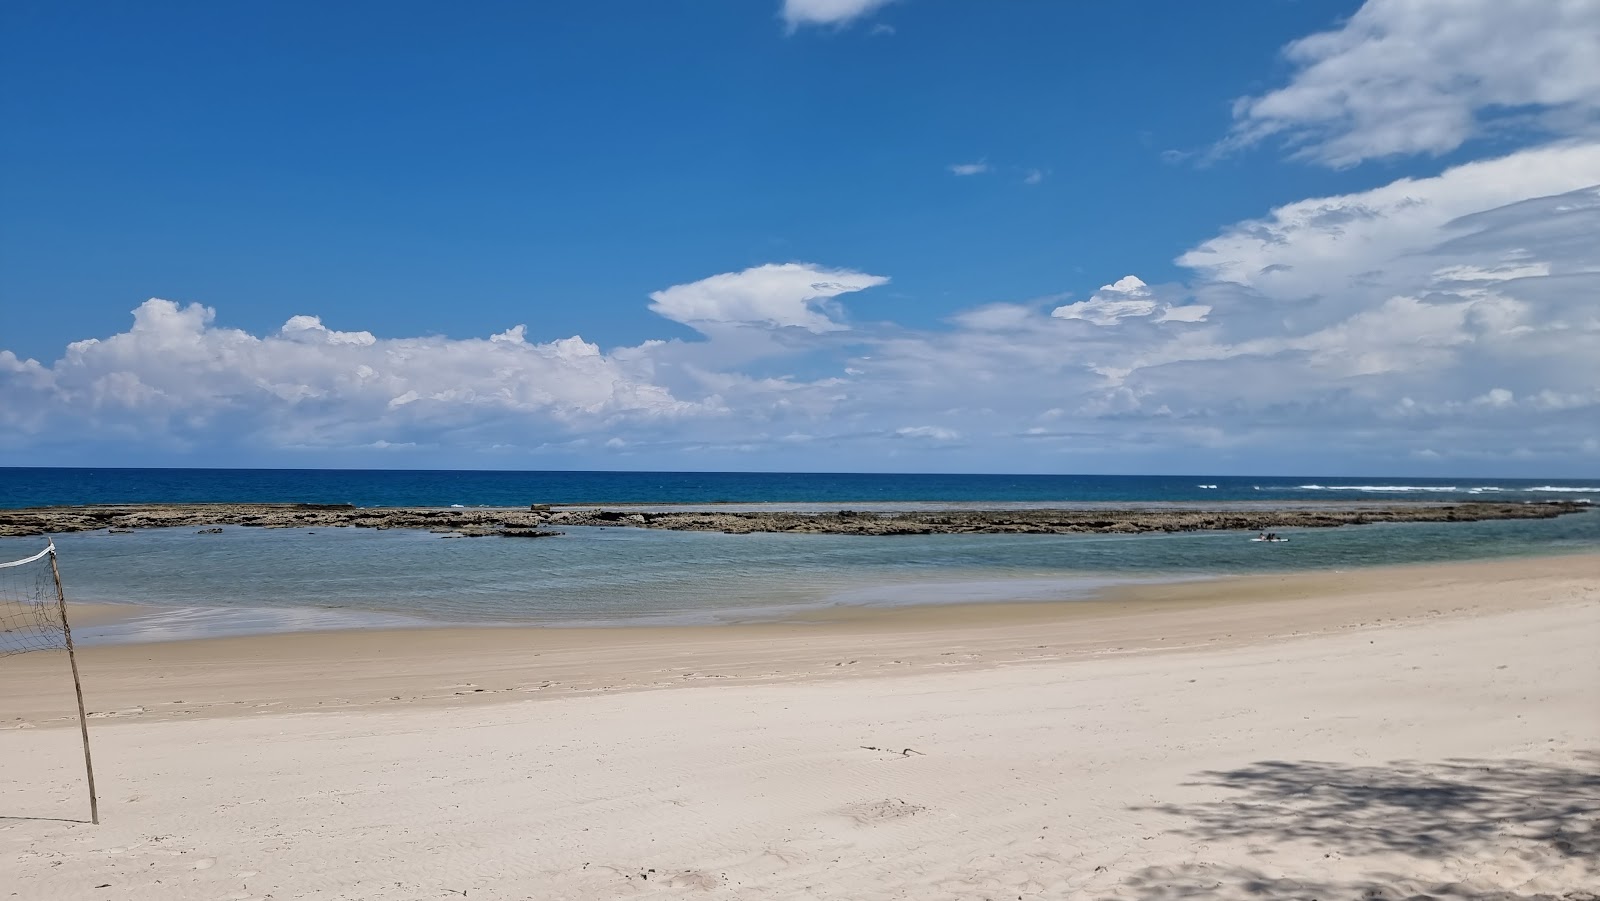 Foto af Kimbiji Beach - populært sted blandt afslapningskendere